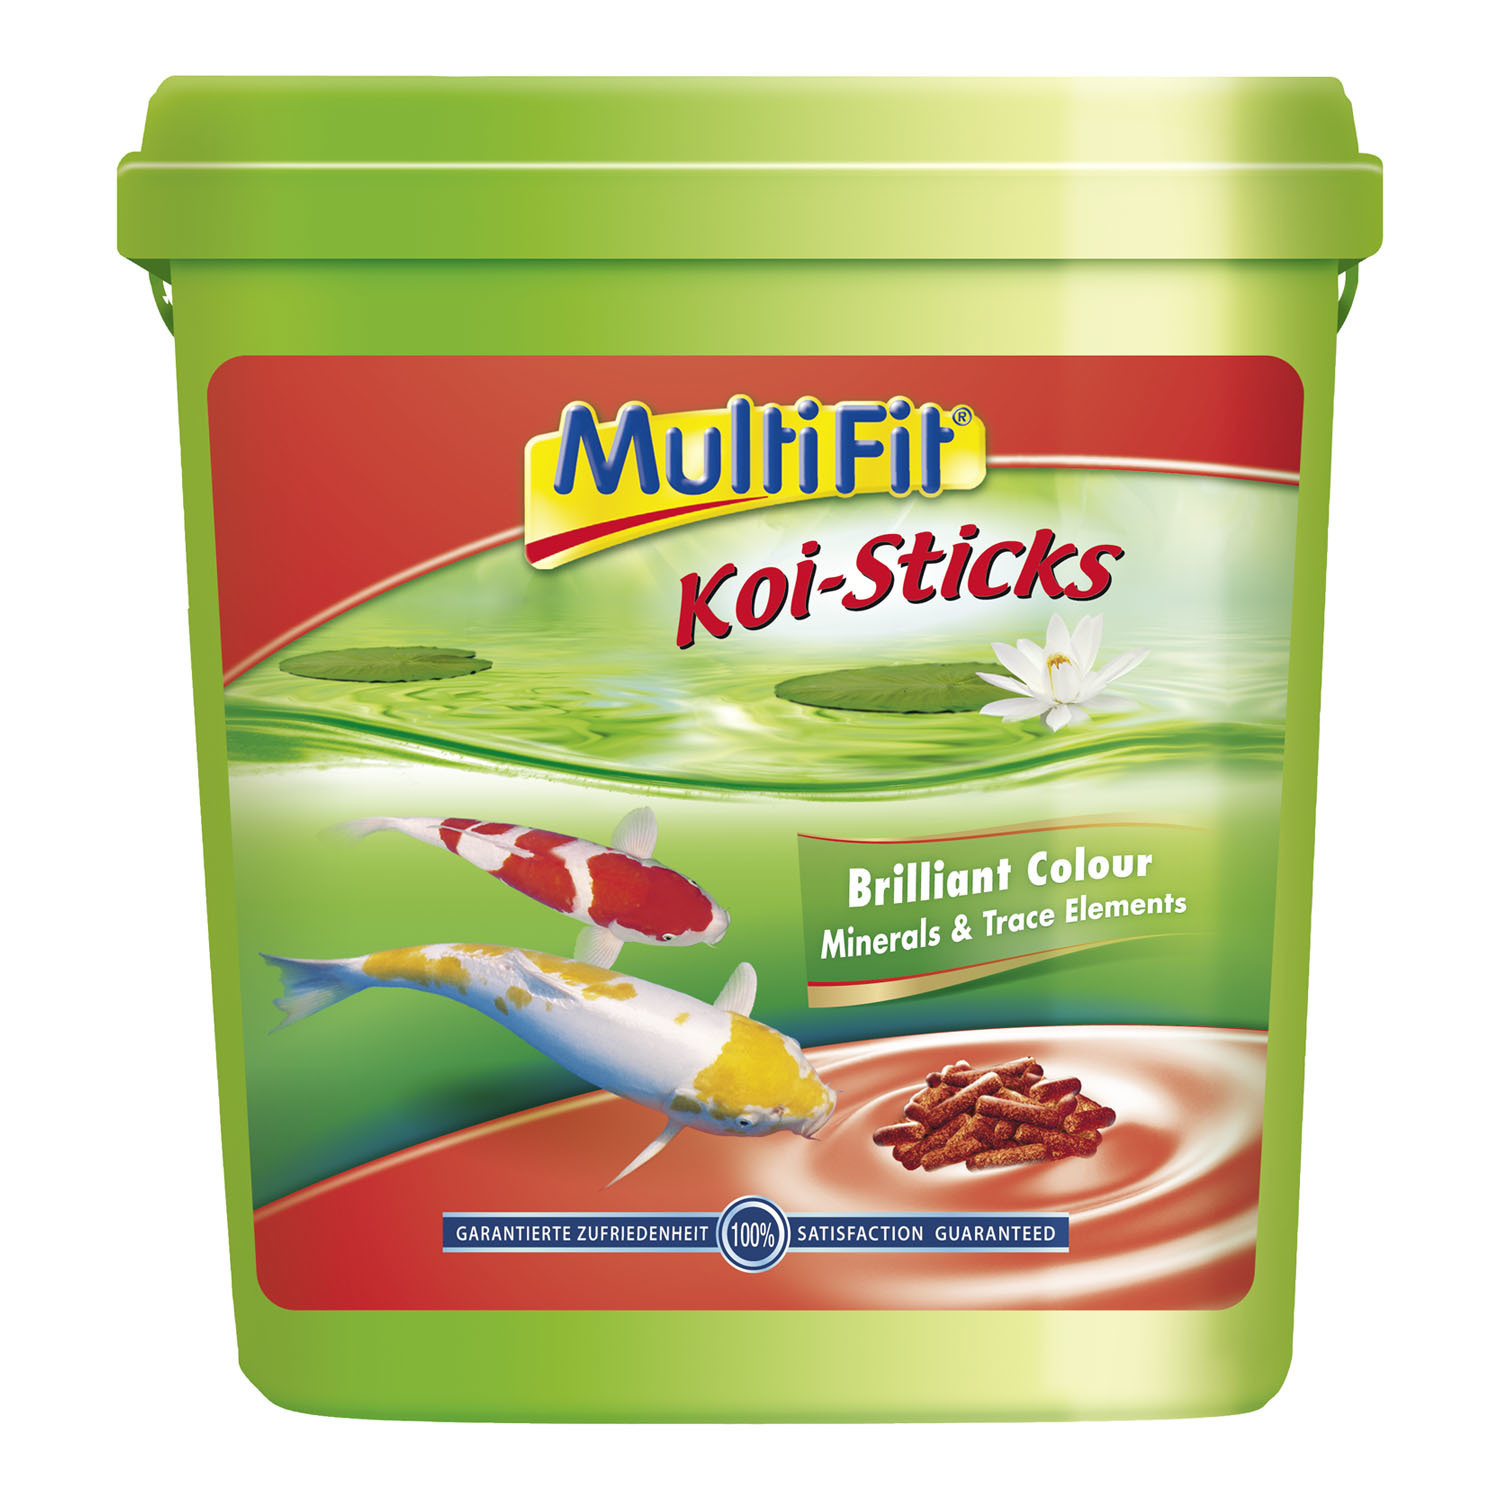 MultiFit Koi-Sticks 5 Liter